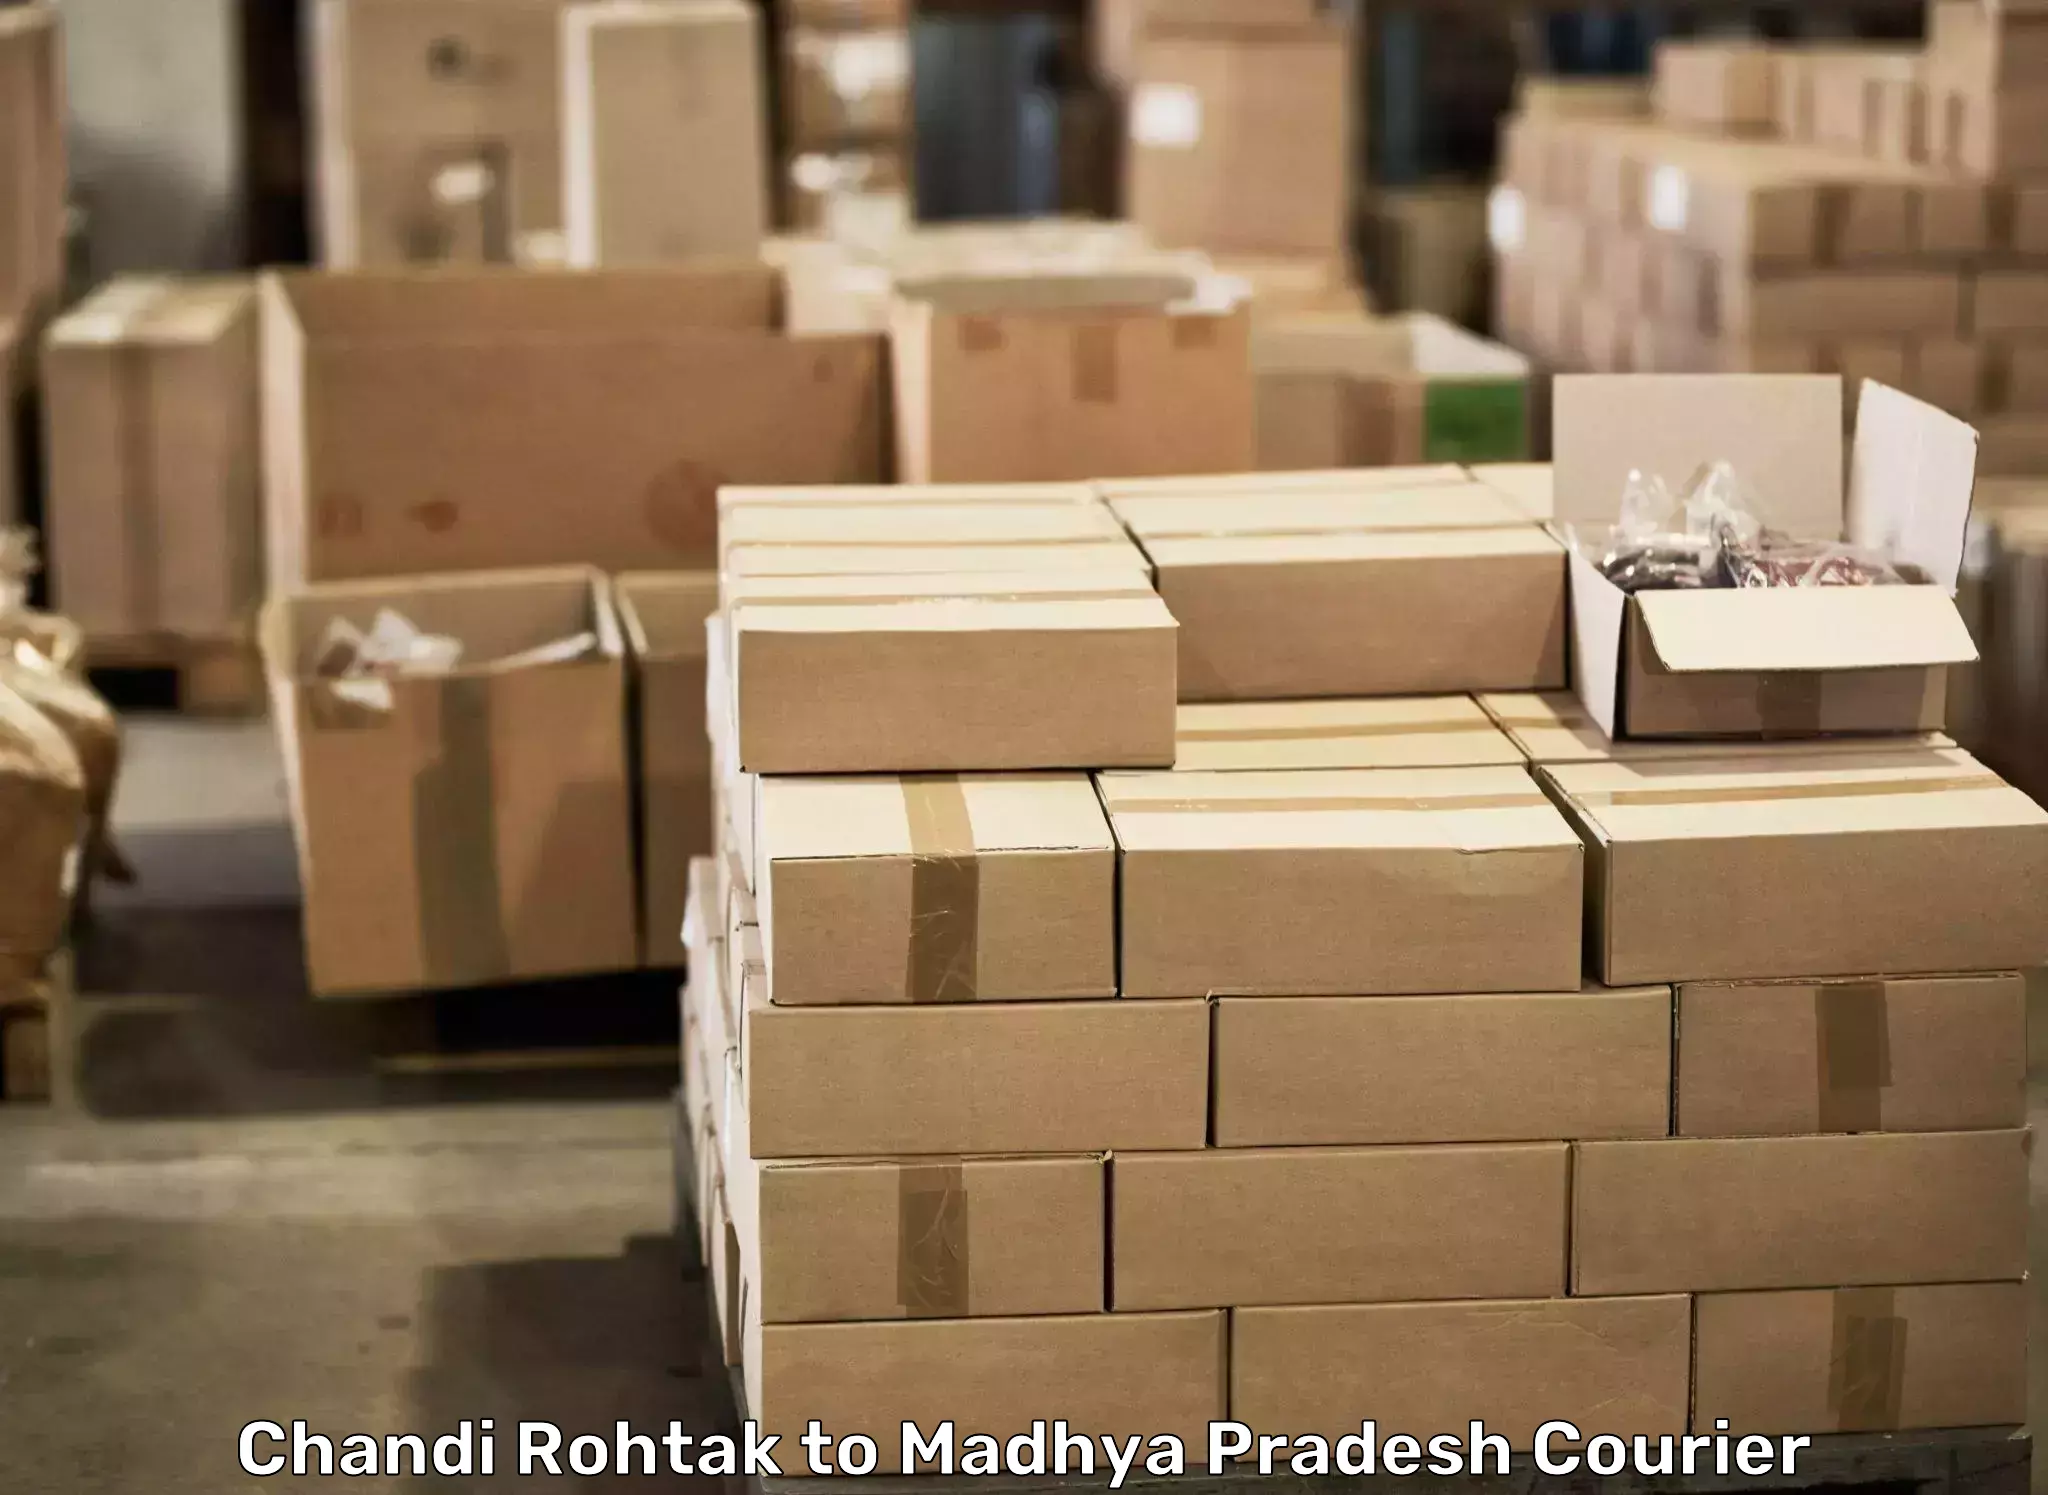 Professional moving company Chandi Rohtak to Chhatarpur